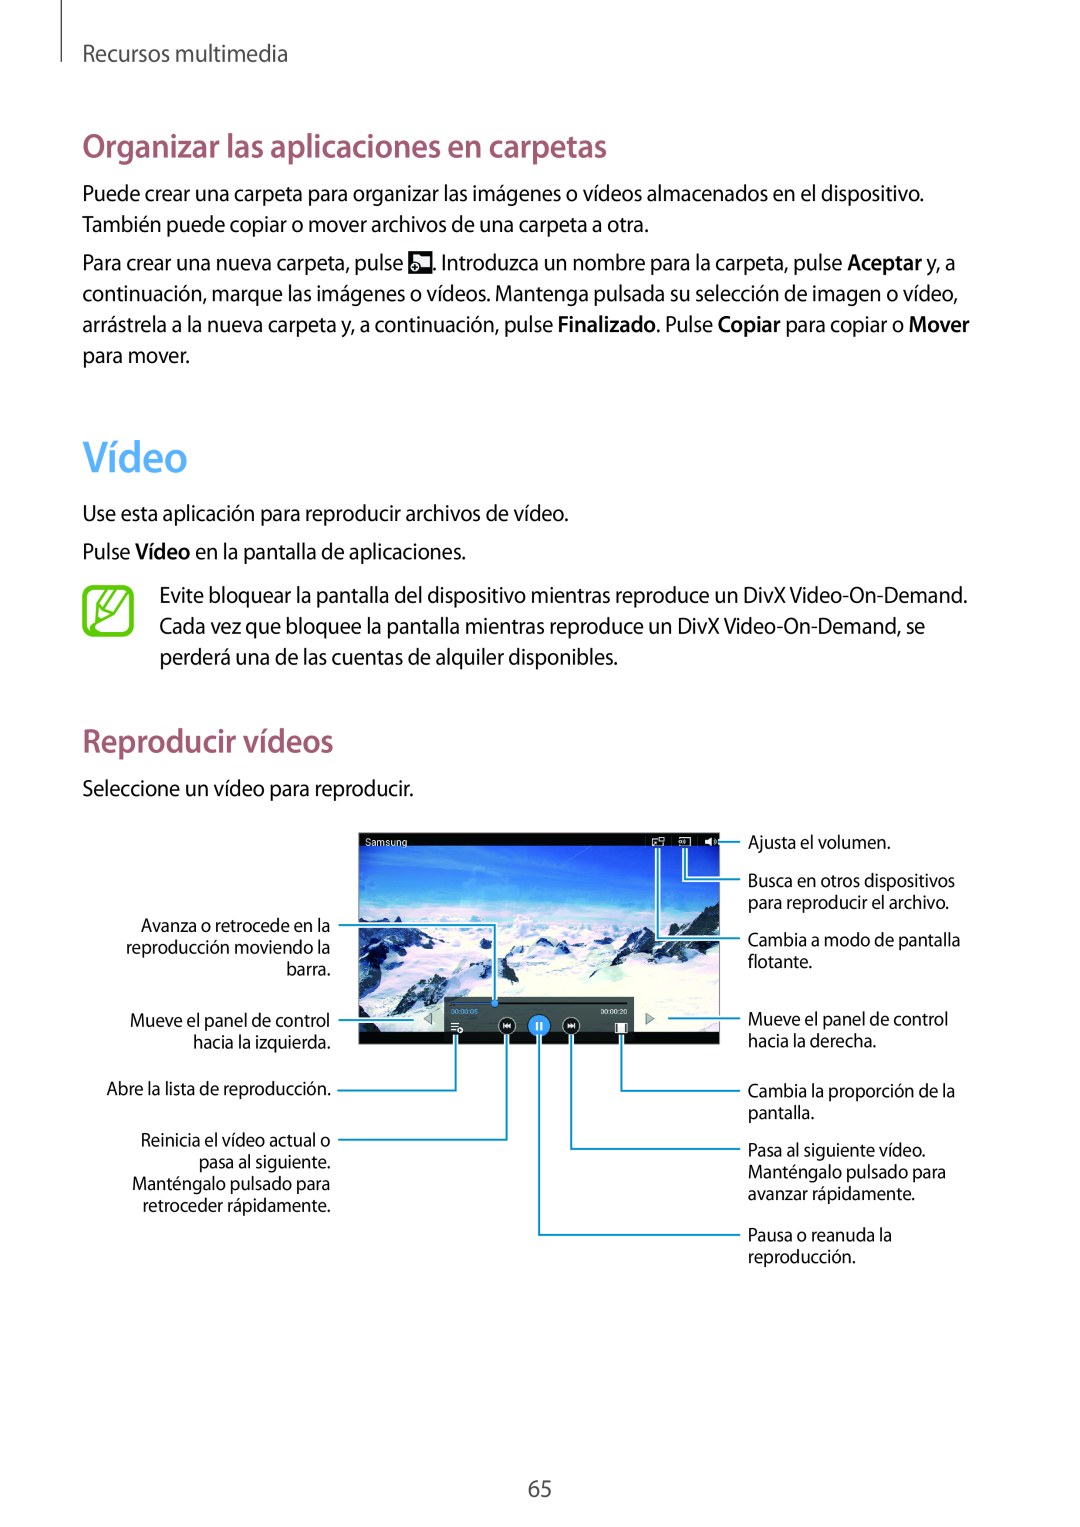 Samsung SM-T2100ZWAITV manual Vídeo, Organizar las aplicaciones en carpetas, Reproducir vídeos, Recursos multimedia 